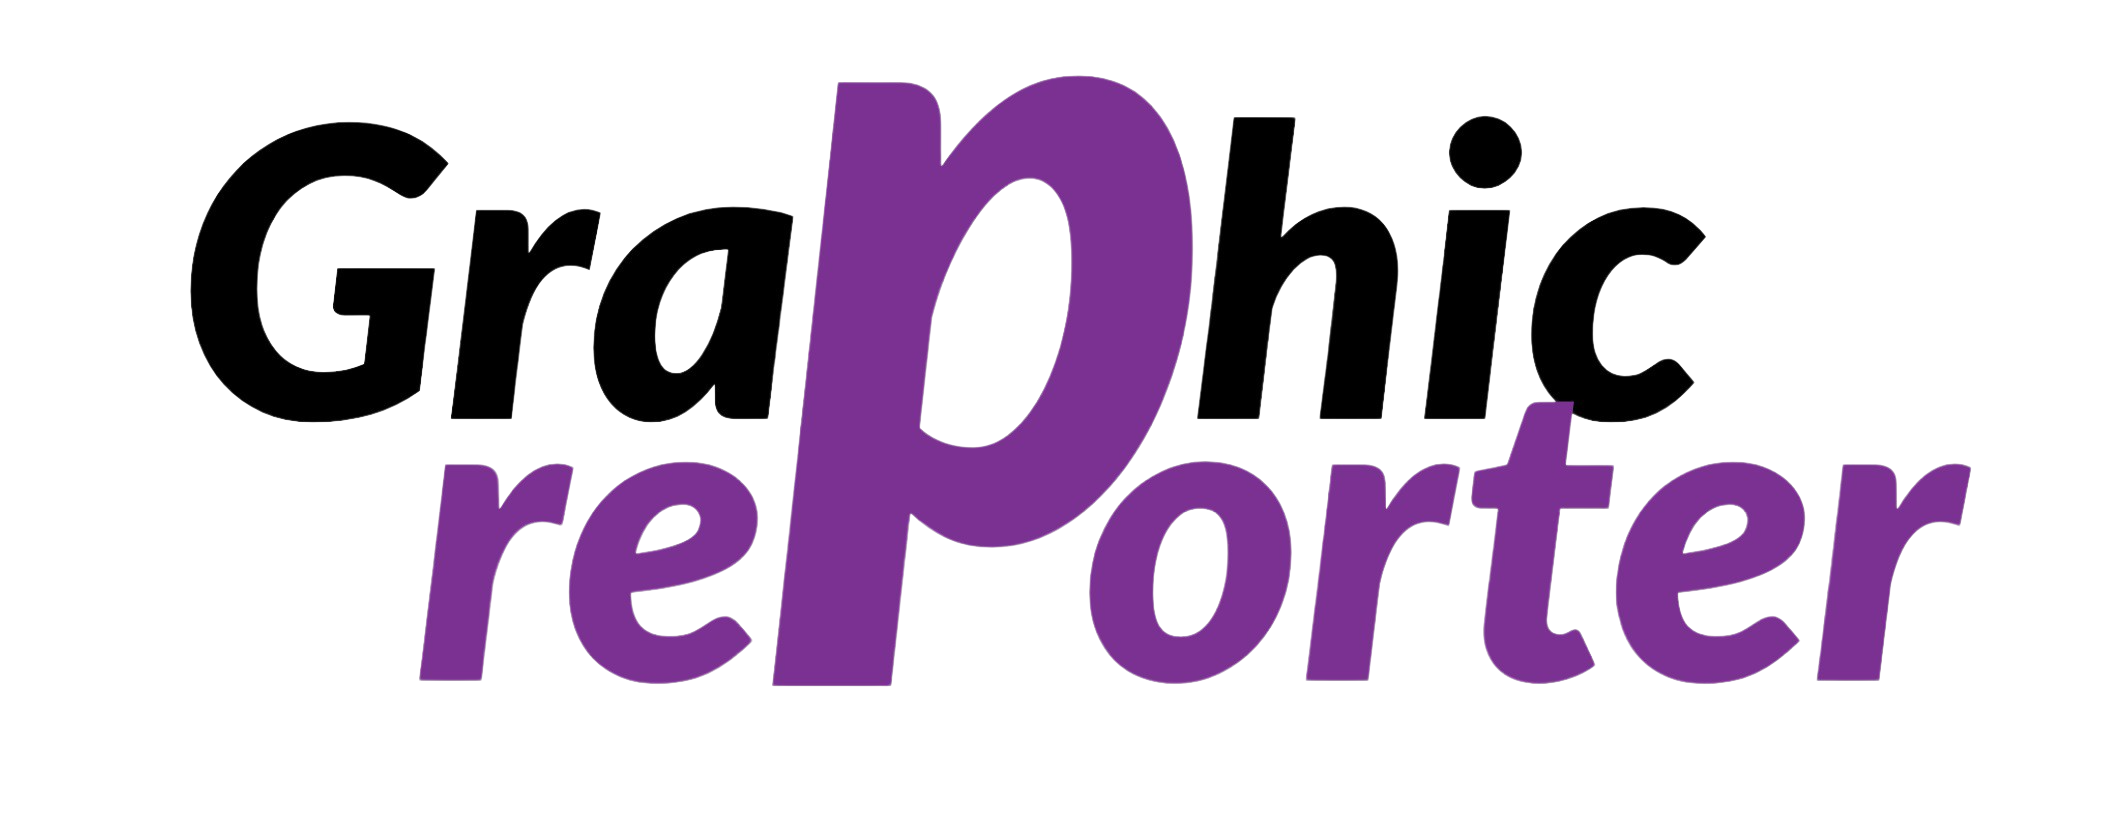 graphicreporter logo